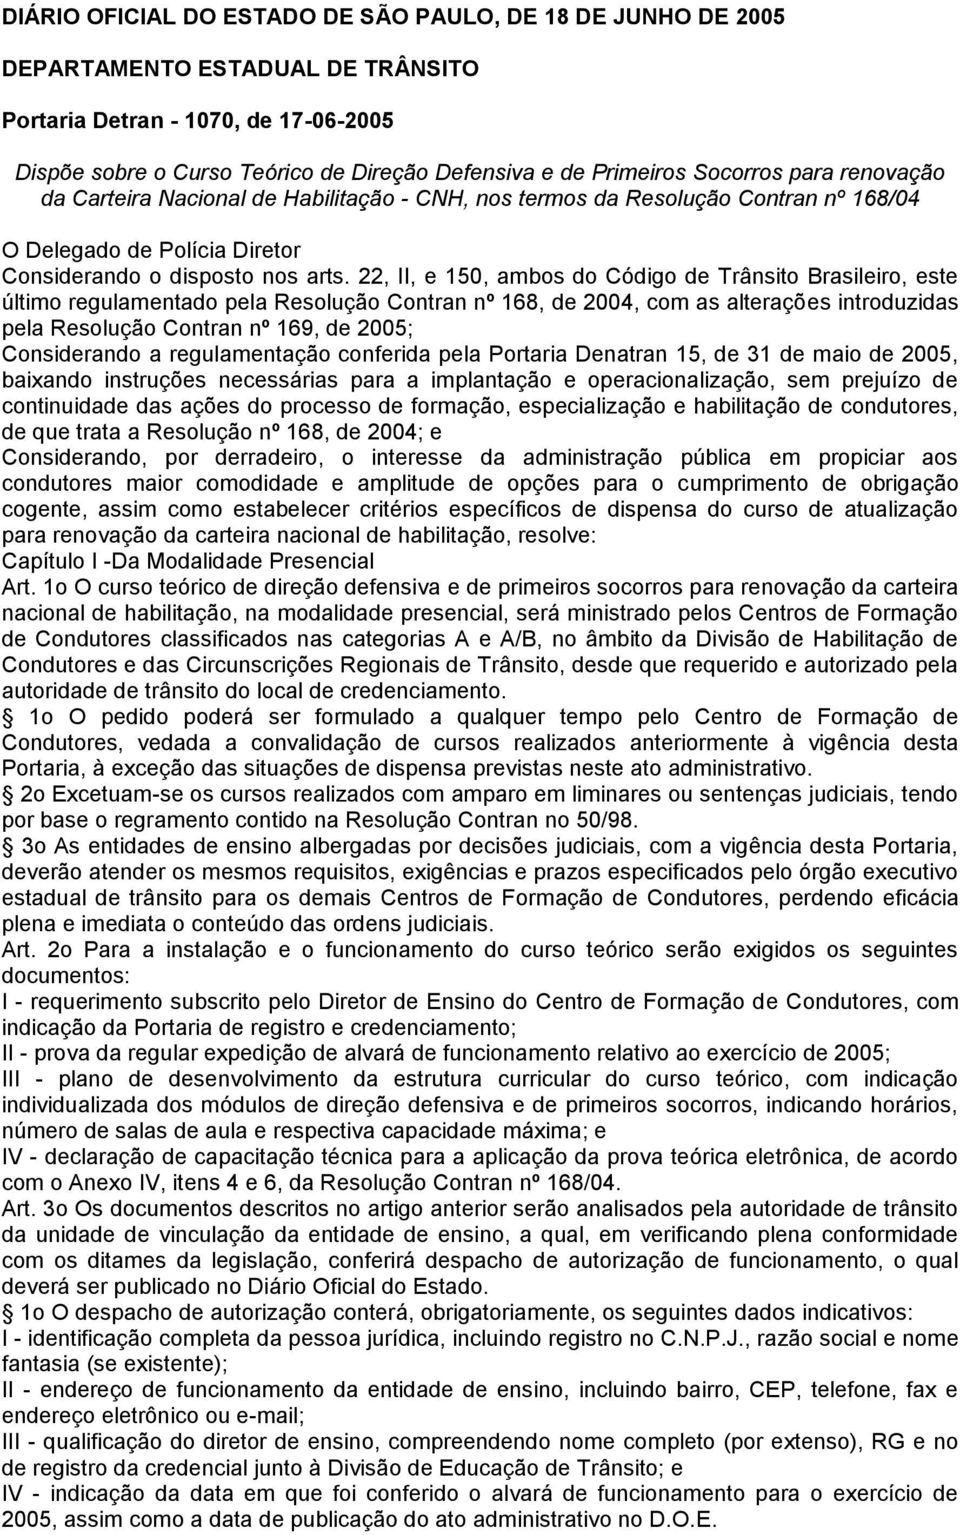 22, II, e 150, ambos do Código de Trânsito Brasileiro, este último regulamentado pela Resolução Contran nº 168, de 2004, com as alterações introduzidas pela Resolução Contran nº 169, de 2005;